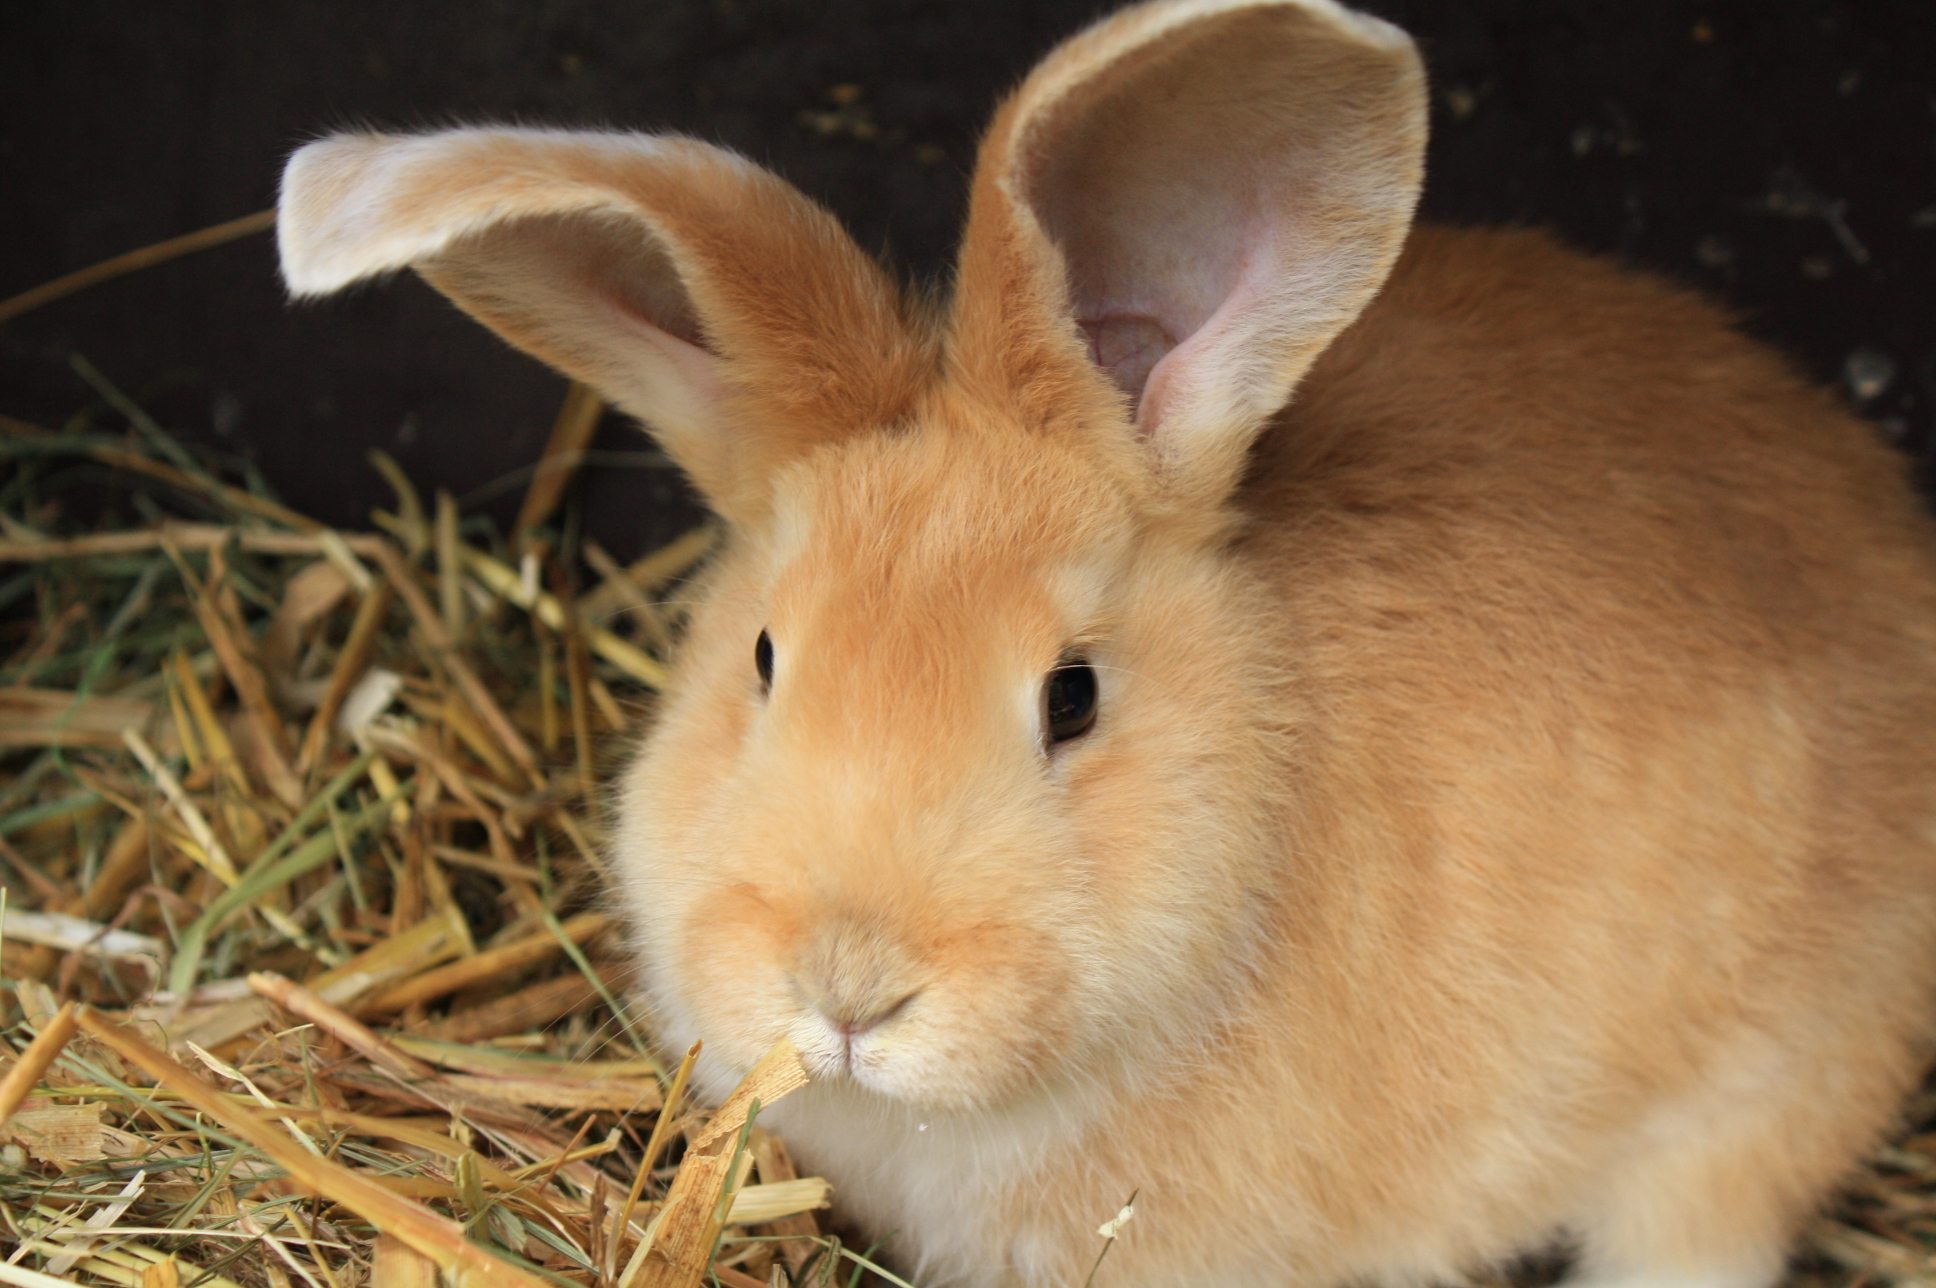 Was du über Kaninchen wissen solltest - PETAkids